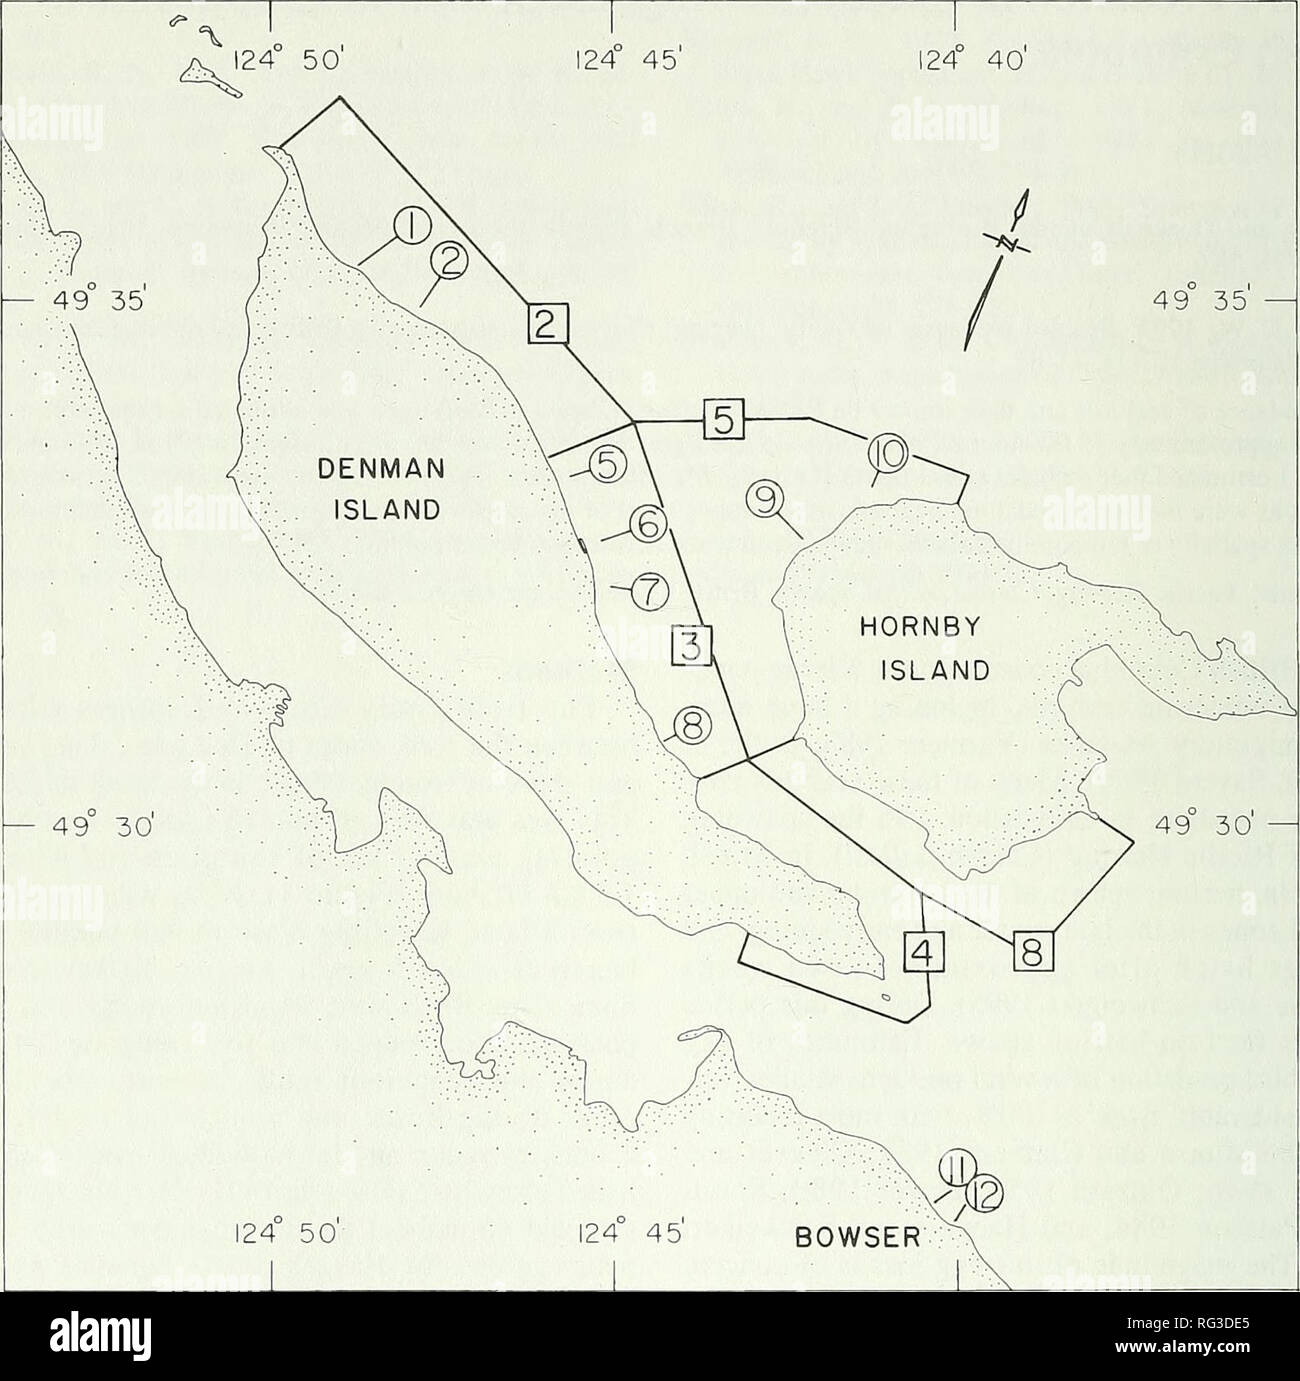 . El campo canadiense-naturalista. 74 El Canadian Field-Naturalist Vol. 107. Figura 1. Área de estudio Canal Lambert mostrando sectores utilizados para conteos de aves (número de plazas) y tran- sectas utilizados para el muestreo inferior (números en círculos). progresado NW para el sector 2 y se para el sector 4. En Hornby Island comenzó en el sector 5 y se avanzó en el sector 8, así como a lo largo de la costa NE, que estaba fuera de la zona de estudio. En 1990, el arenque engendrado por un período más corto, 2-10 de marzo, y generando un promedio de sólo tres días en cualquier ubicación. La progresión de desove fue similar al de 1989, salvo que no s Foto de stock